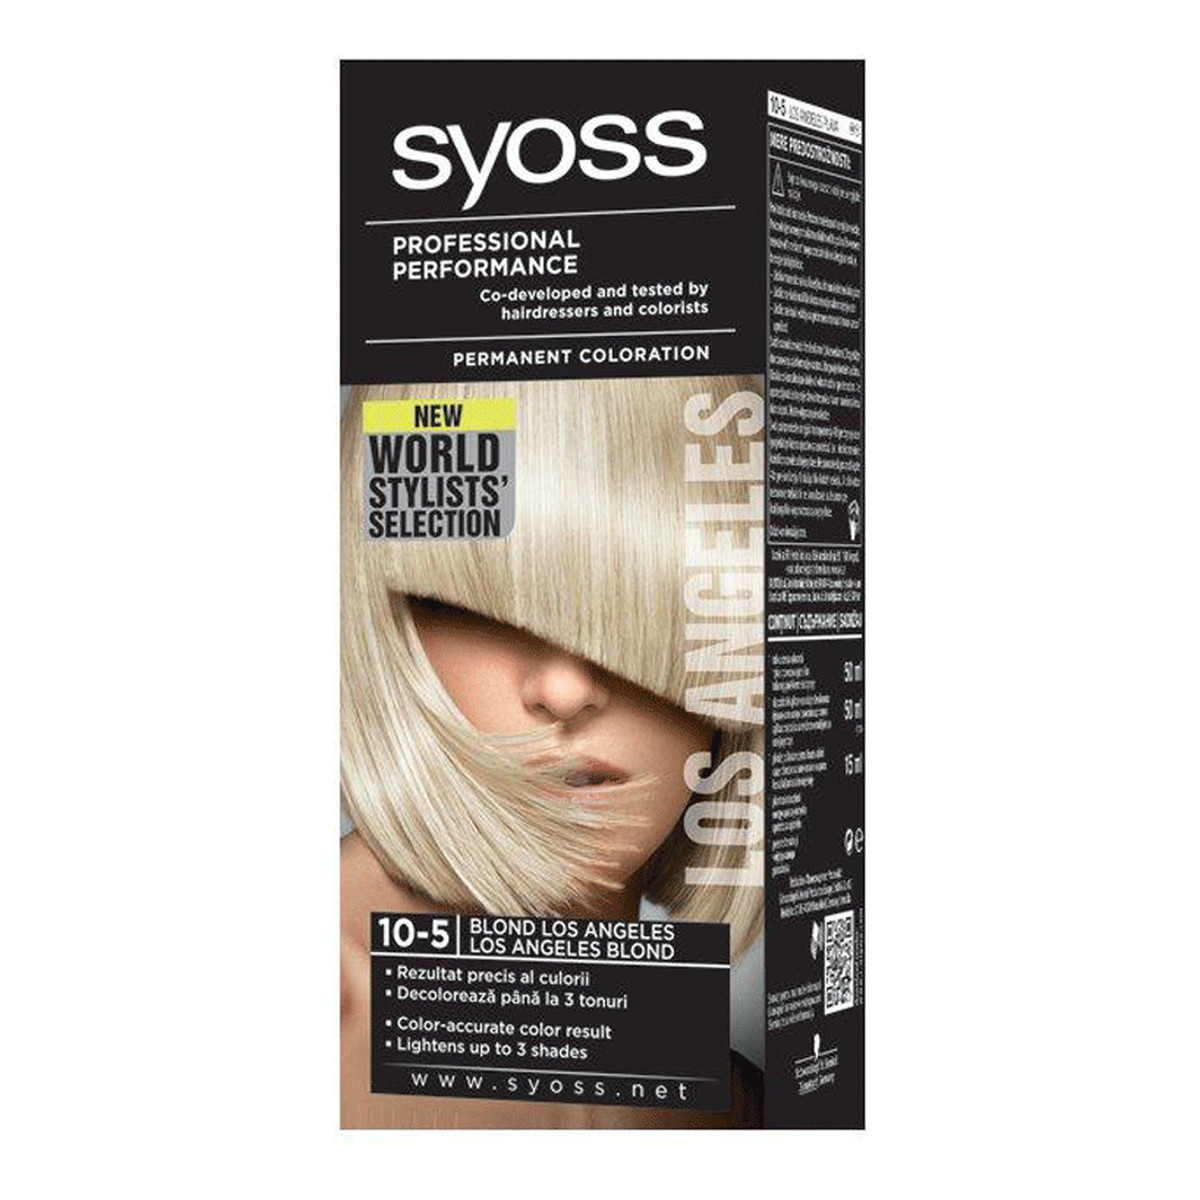 Syoss Color World Stylists Professional Performance Farba Do Włosów Blond Los Angeles (10-5) 115ml